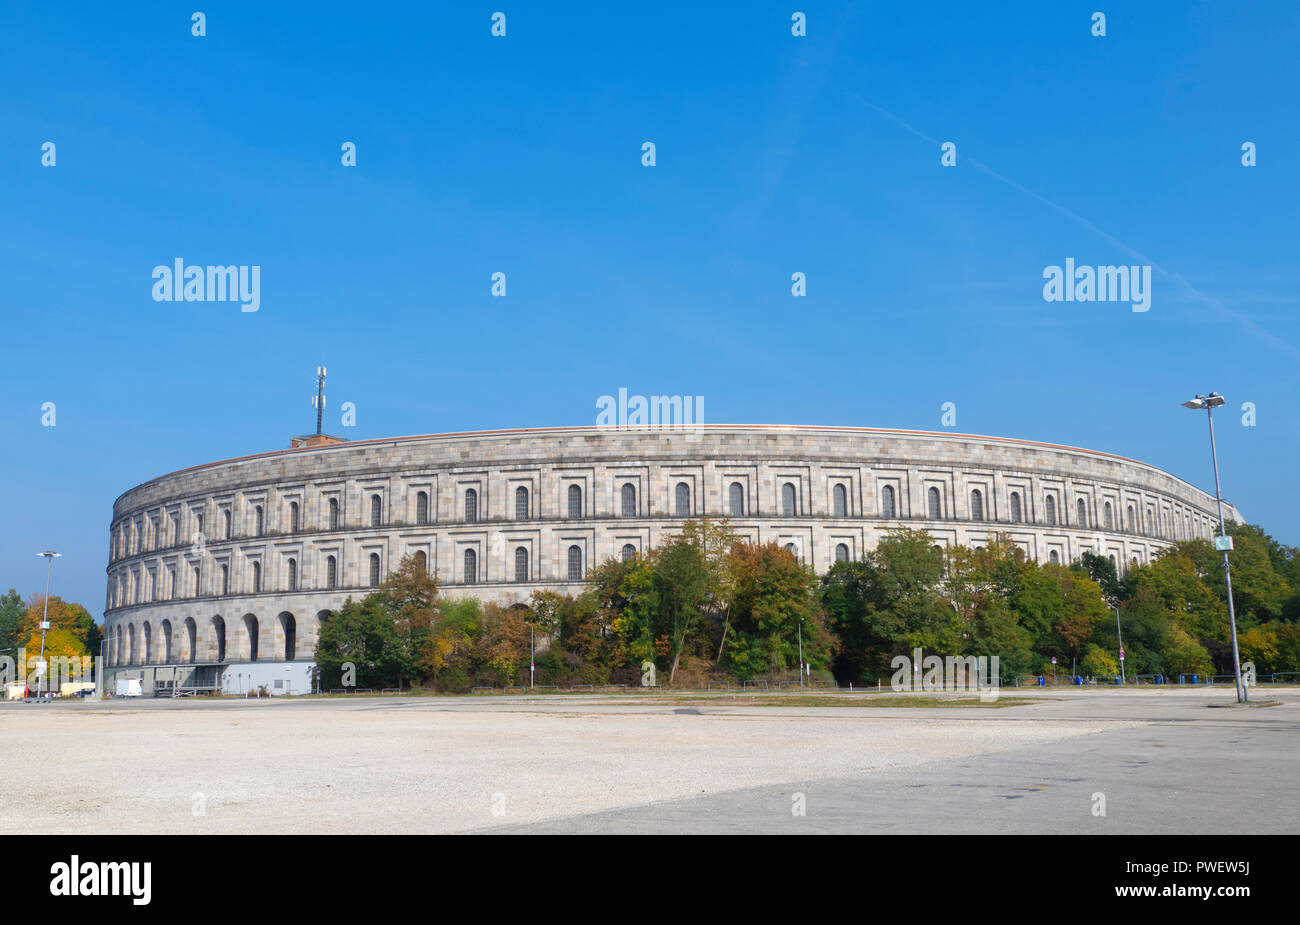 Palacio de Congresos - Kongresshalle fue planeado para ser un centro de congresos para el NSDAP. Construido por los nazis para sus mítines nunca fue terminado. Foto de stock